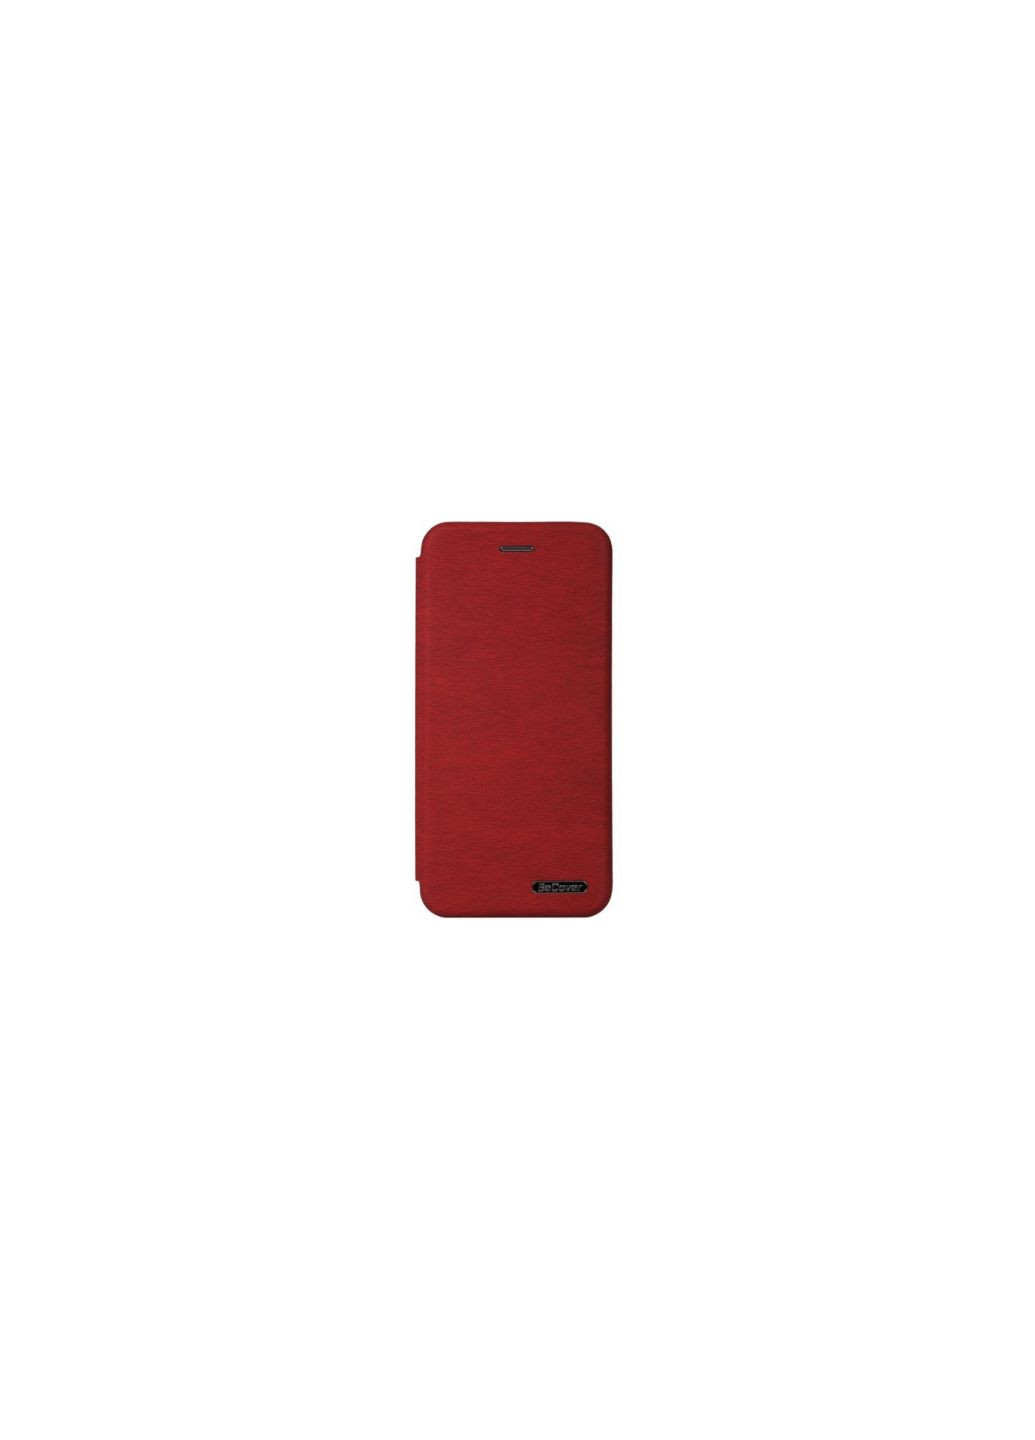 Чехол для моб. телефона Exclusive Samsung Galaxy M52 SMM526 Burgundy Red (707047) BeCover exclusive samsung galaxy m52 sm-m526 burgundy red (275078021)